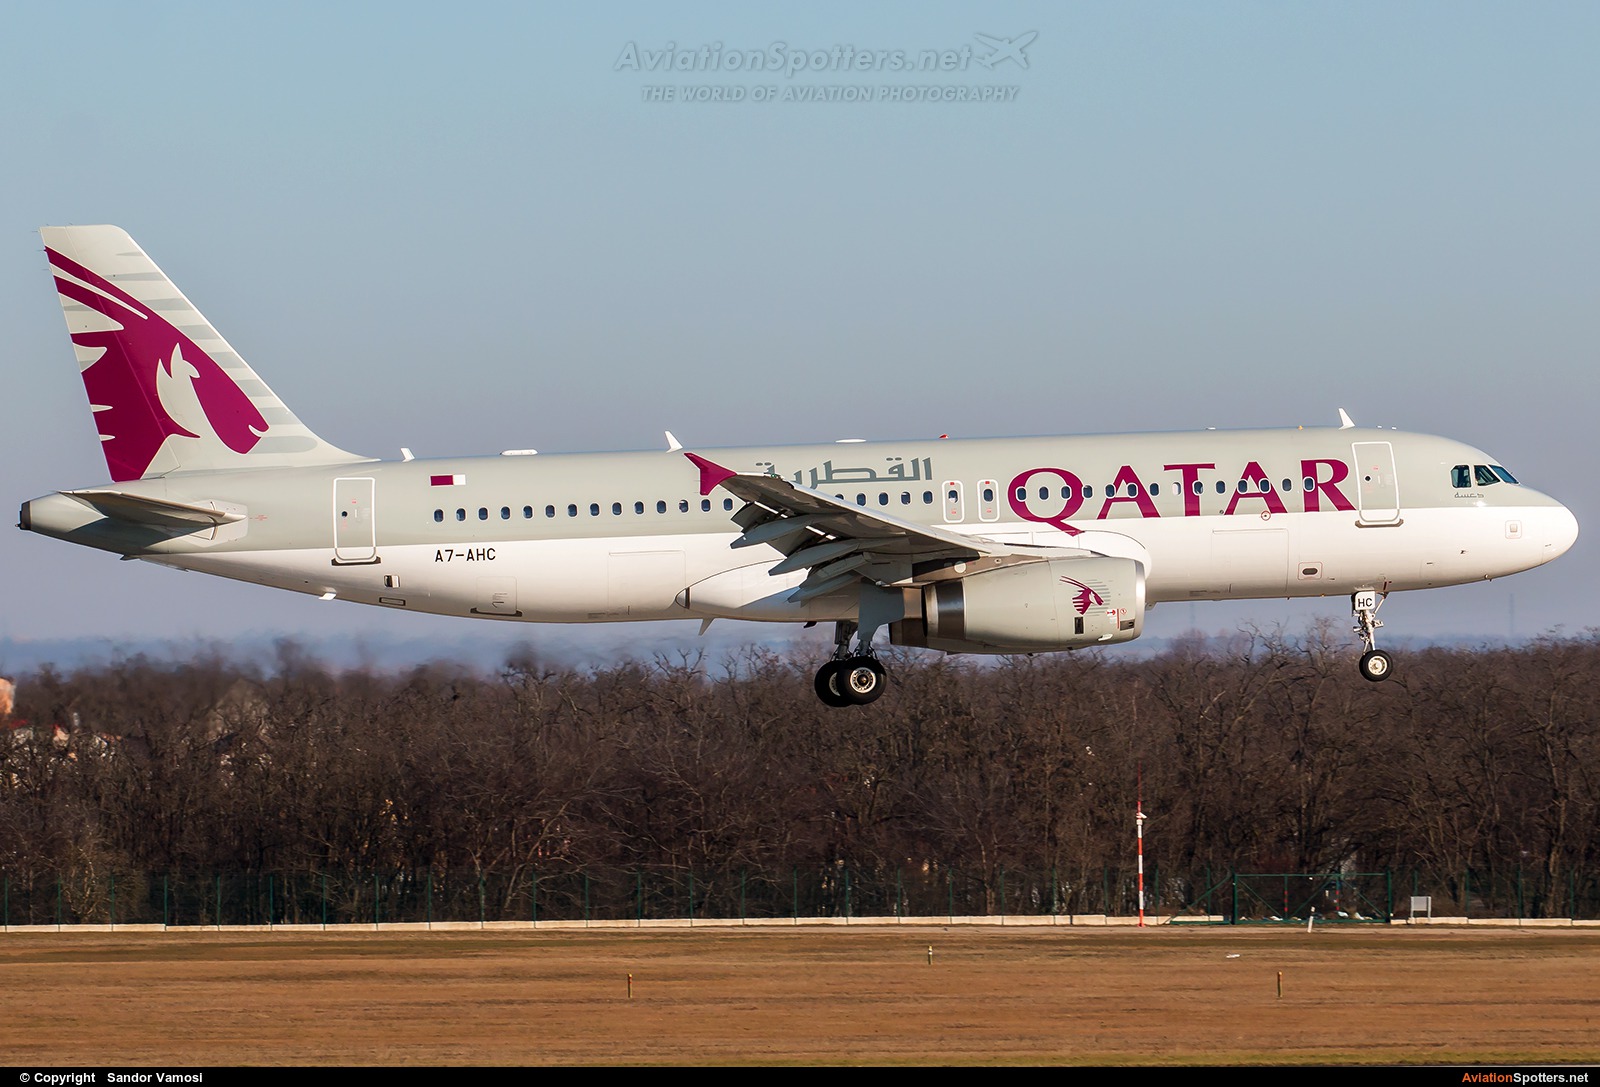 Qatar Airways  -  A320  (A7-AHC) By Sandor Vamosi (ALEX67)